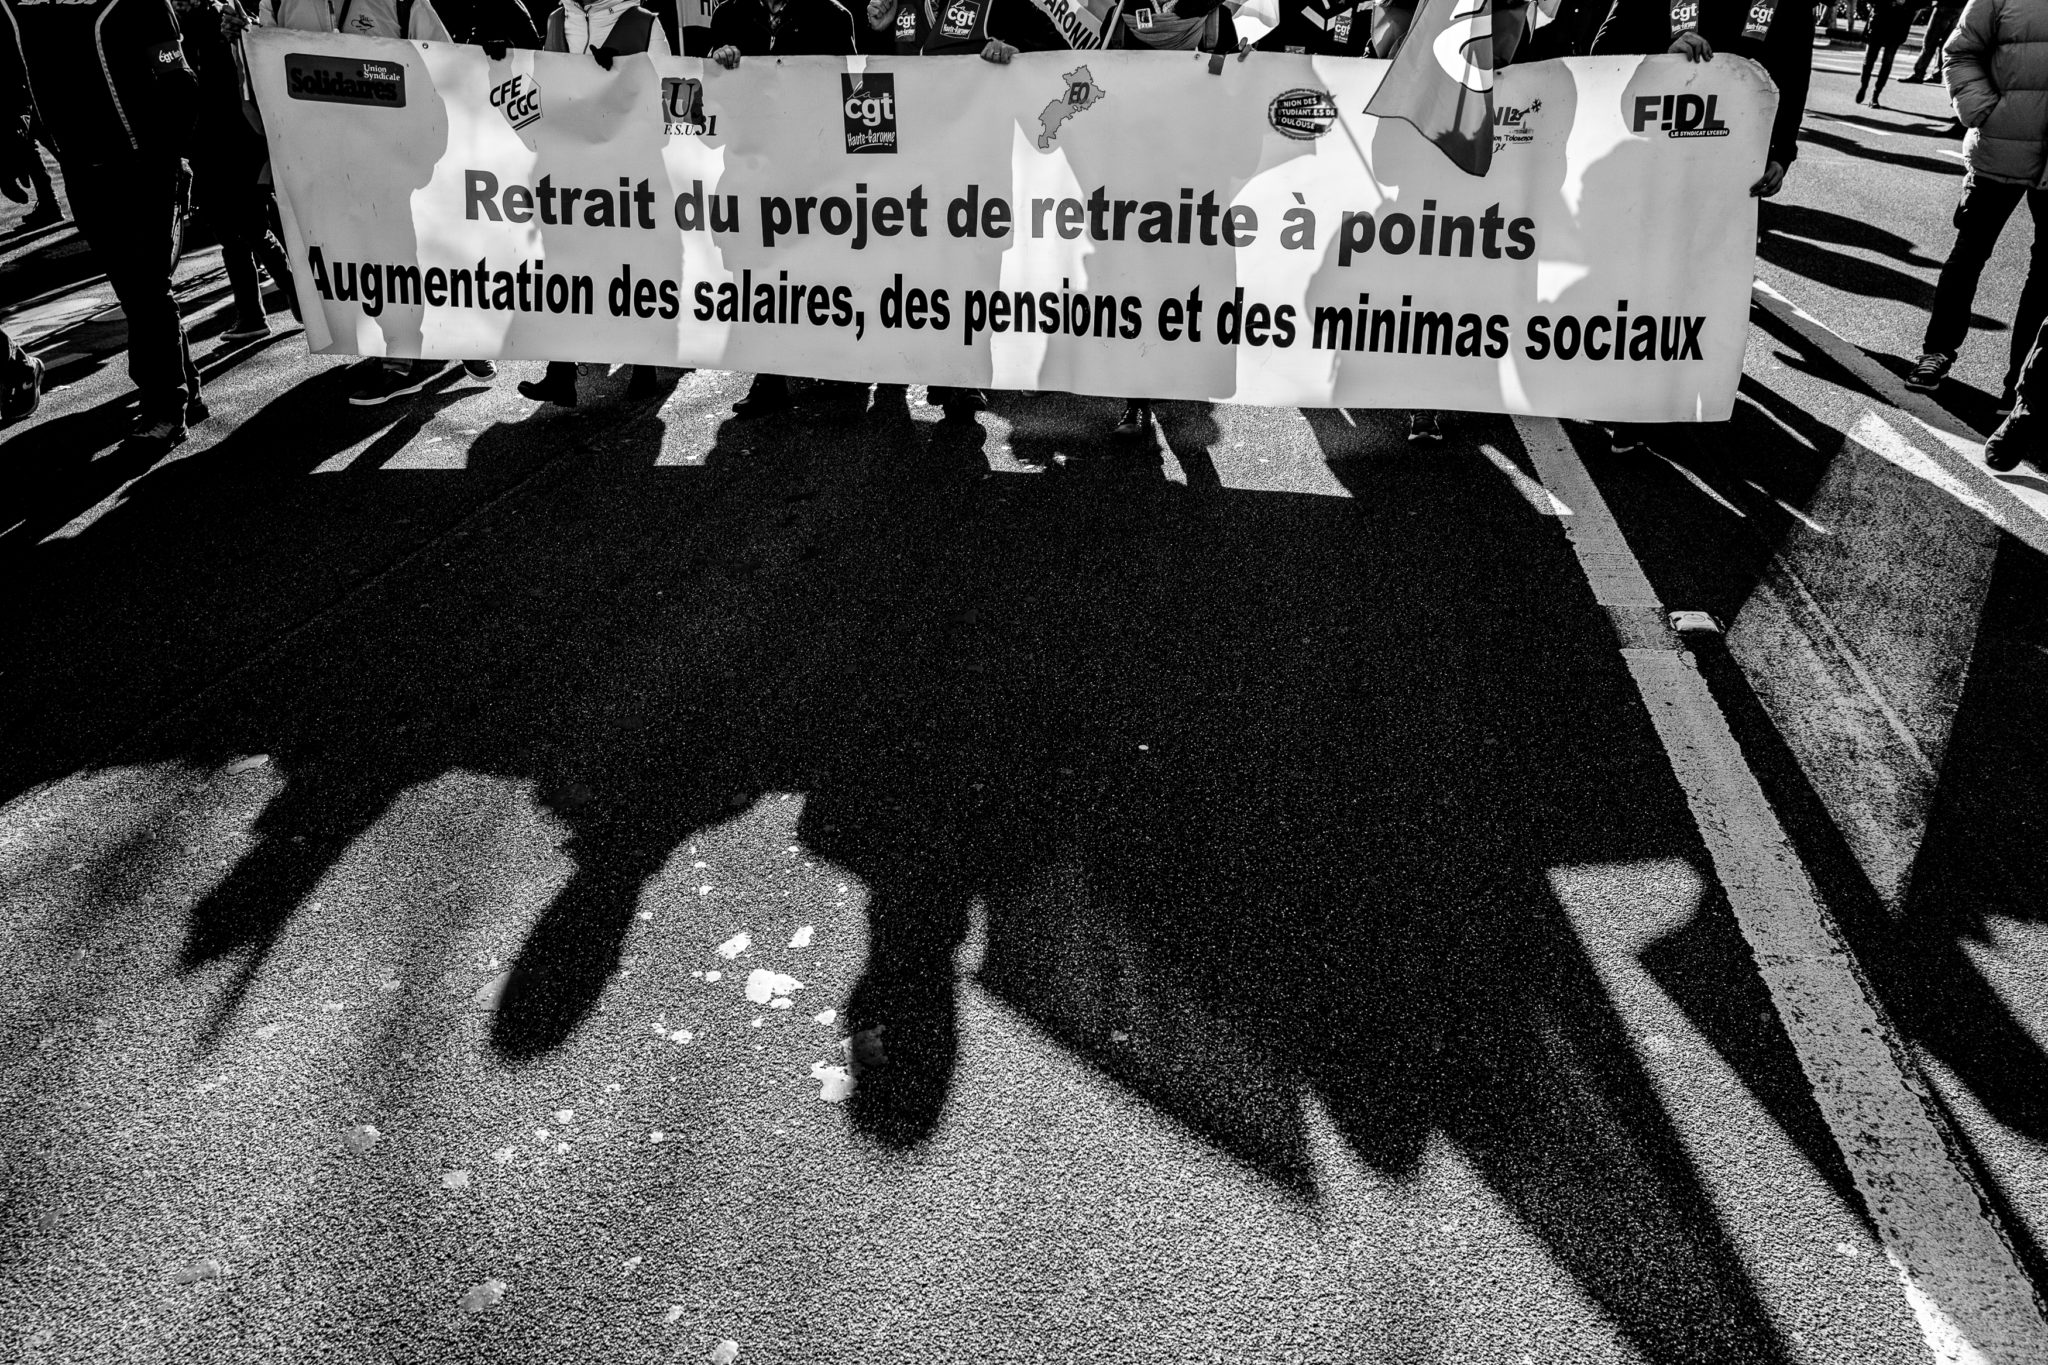 Sujet épineux et sensible. Retour en images sur les manifestations qui ont eu lieu à Toulouse pour s’opposer au projet de loi gouvernemental.